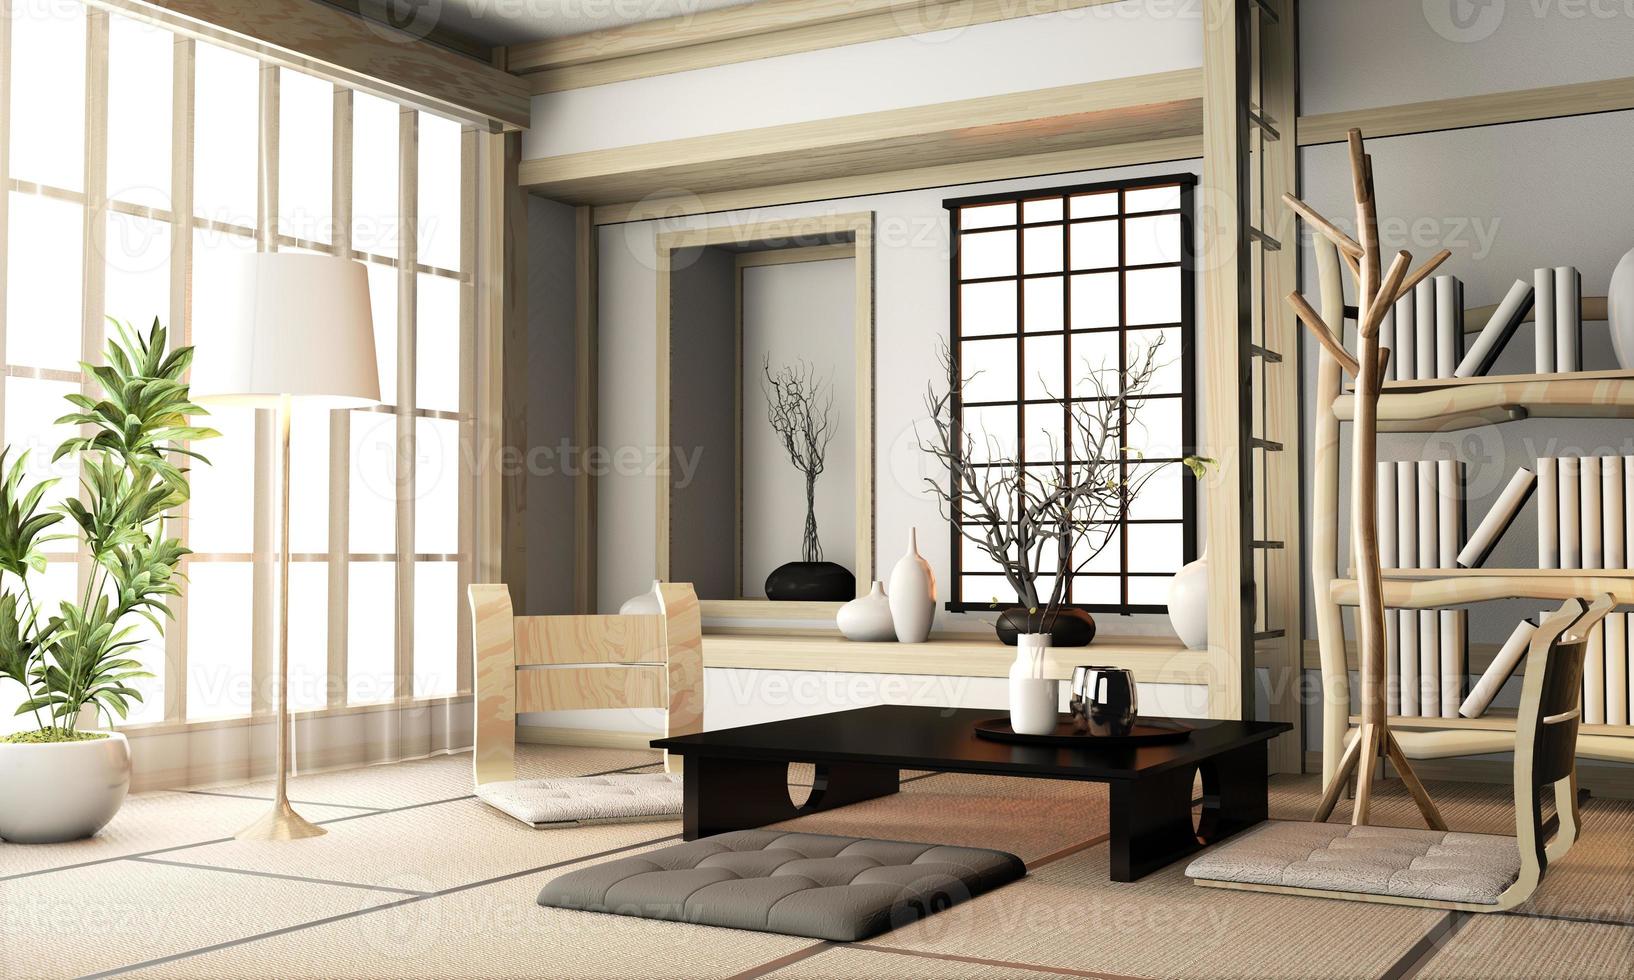 ryokan soggiorno in stile giapponese con pavimento in tatami e decorazione.3d rendering foto